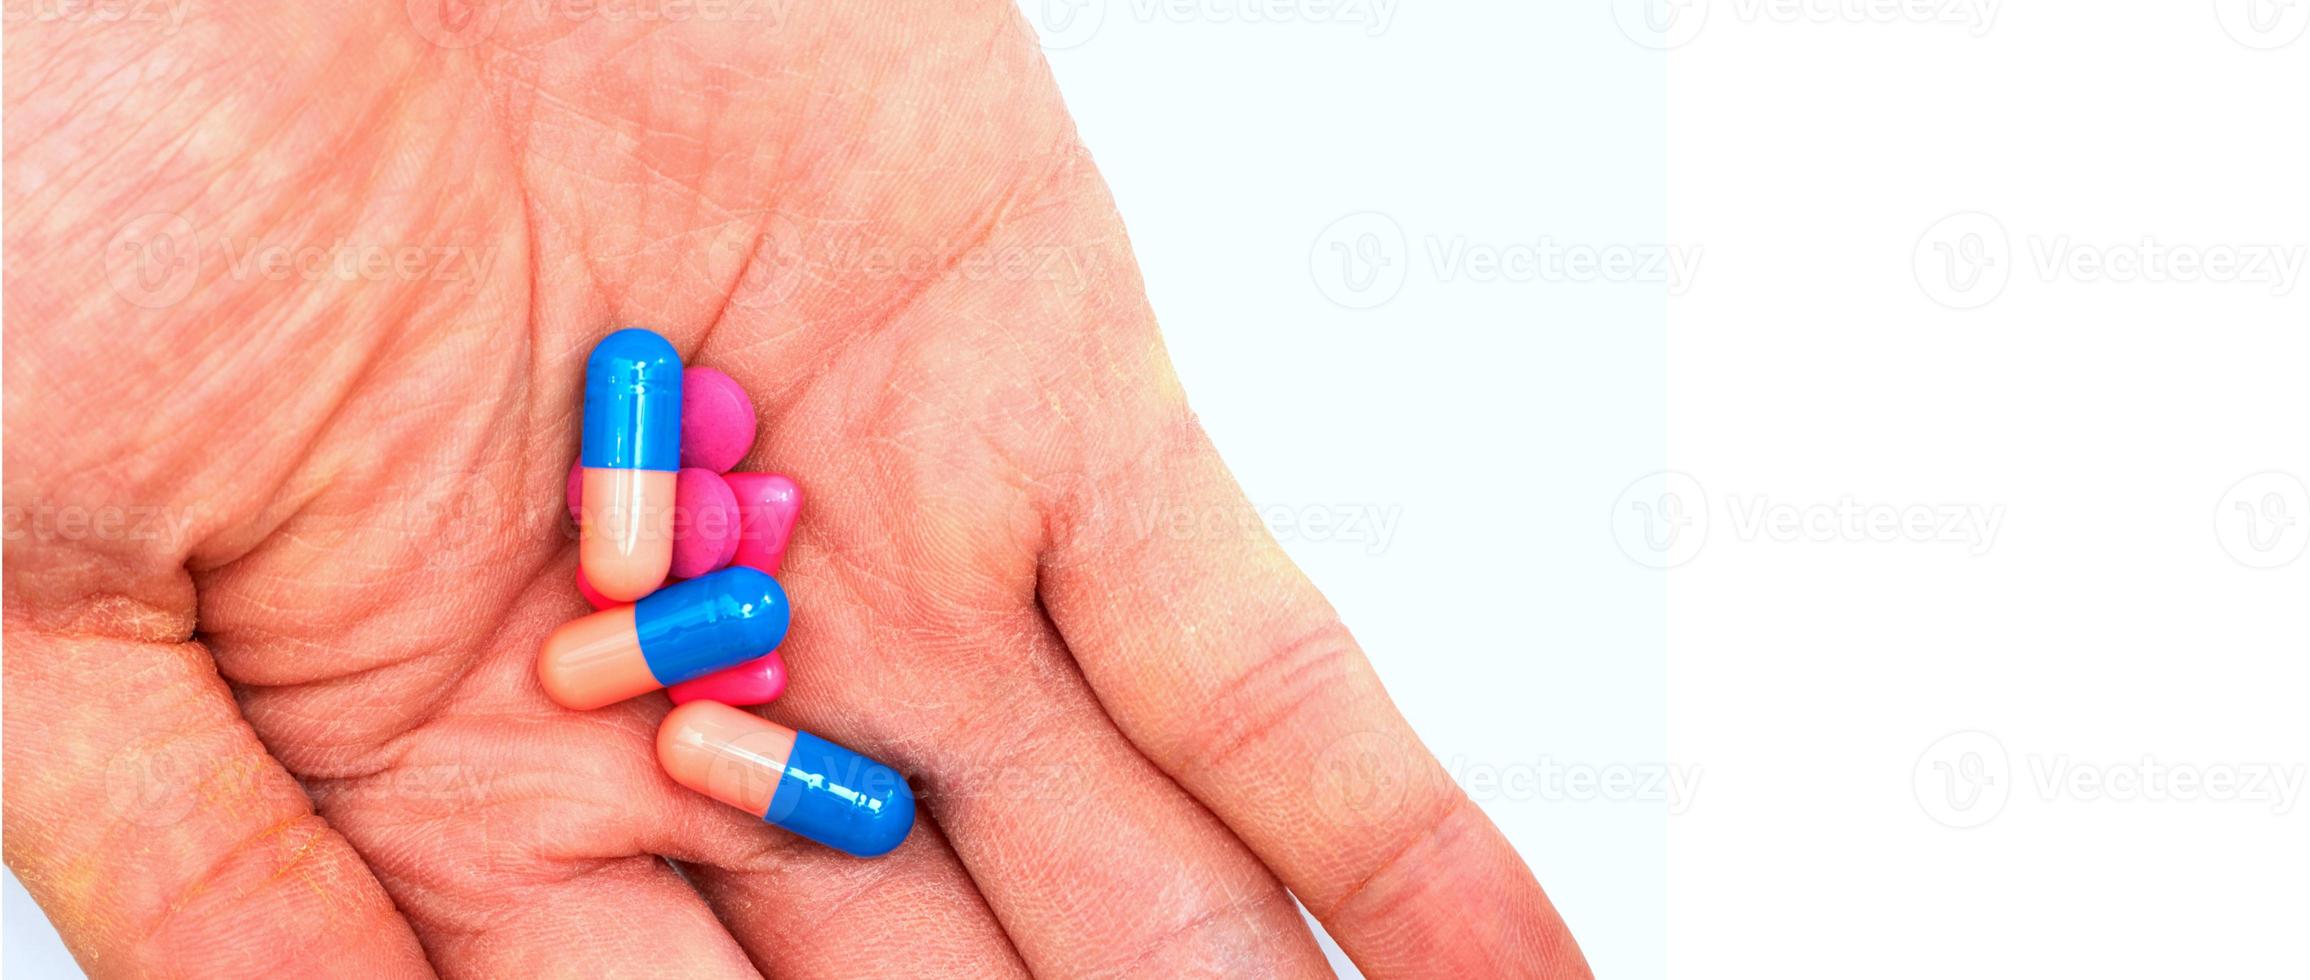 met de hand vastgehouden medicijnen voordat ze oraal worden ingenomen in het concept van drugsconsumptie, gesloten foto